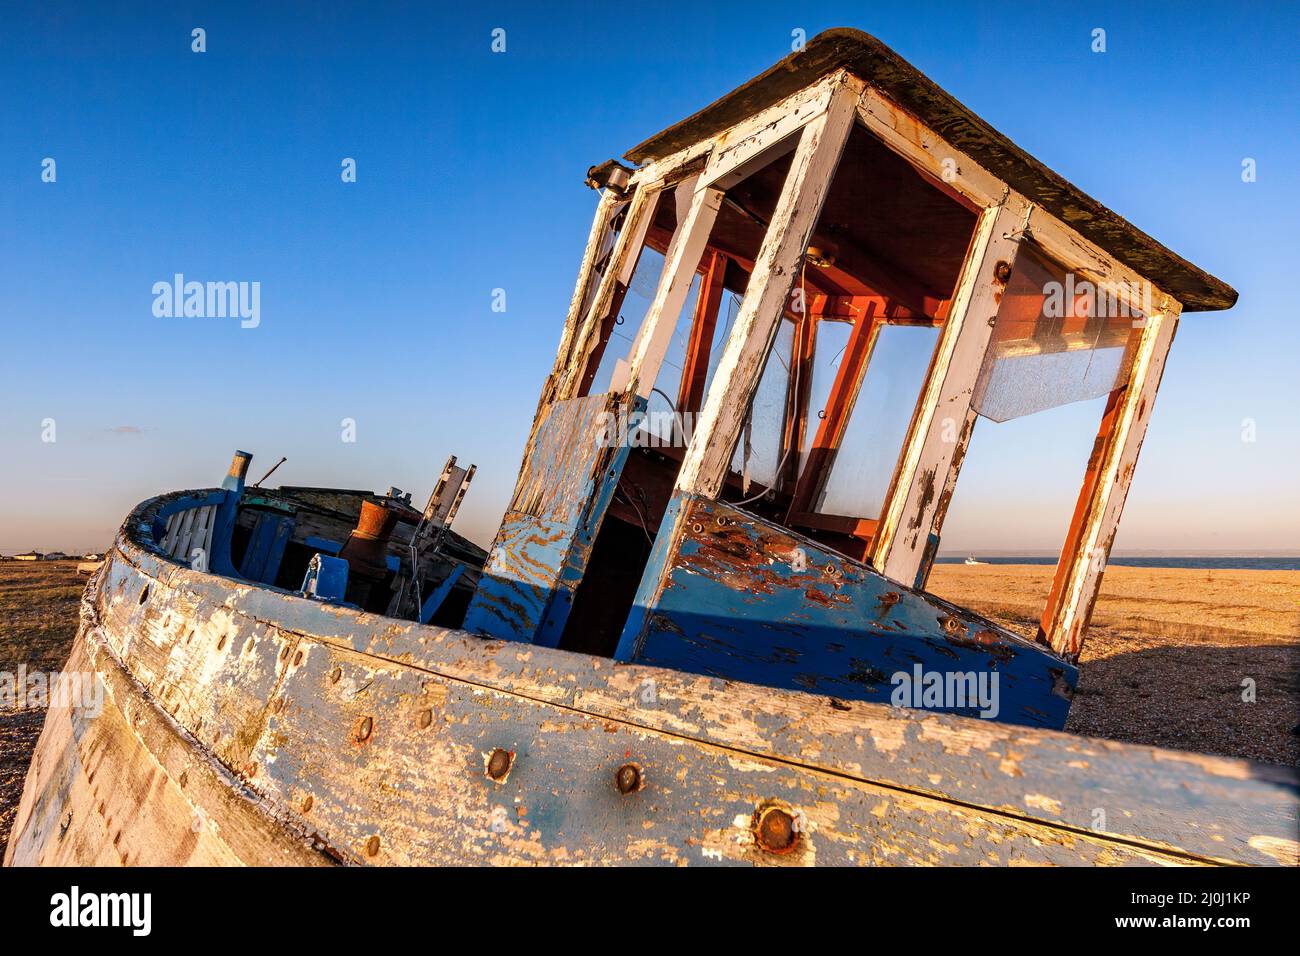 DUNGENESS, KENT. UK - DECEMBER 17 :  Derelict Fishing Boat on Dungeness Beach in Kent on December 17, 2008 Stock Photo